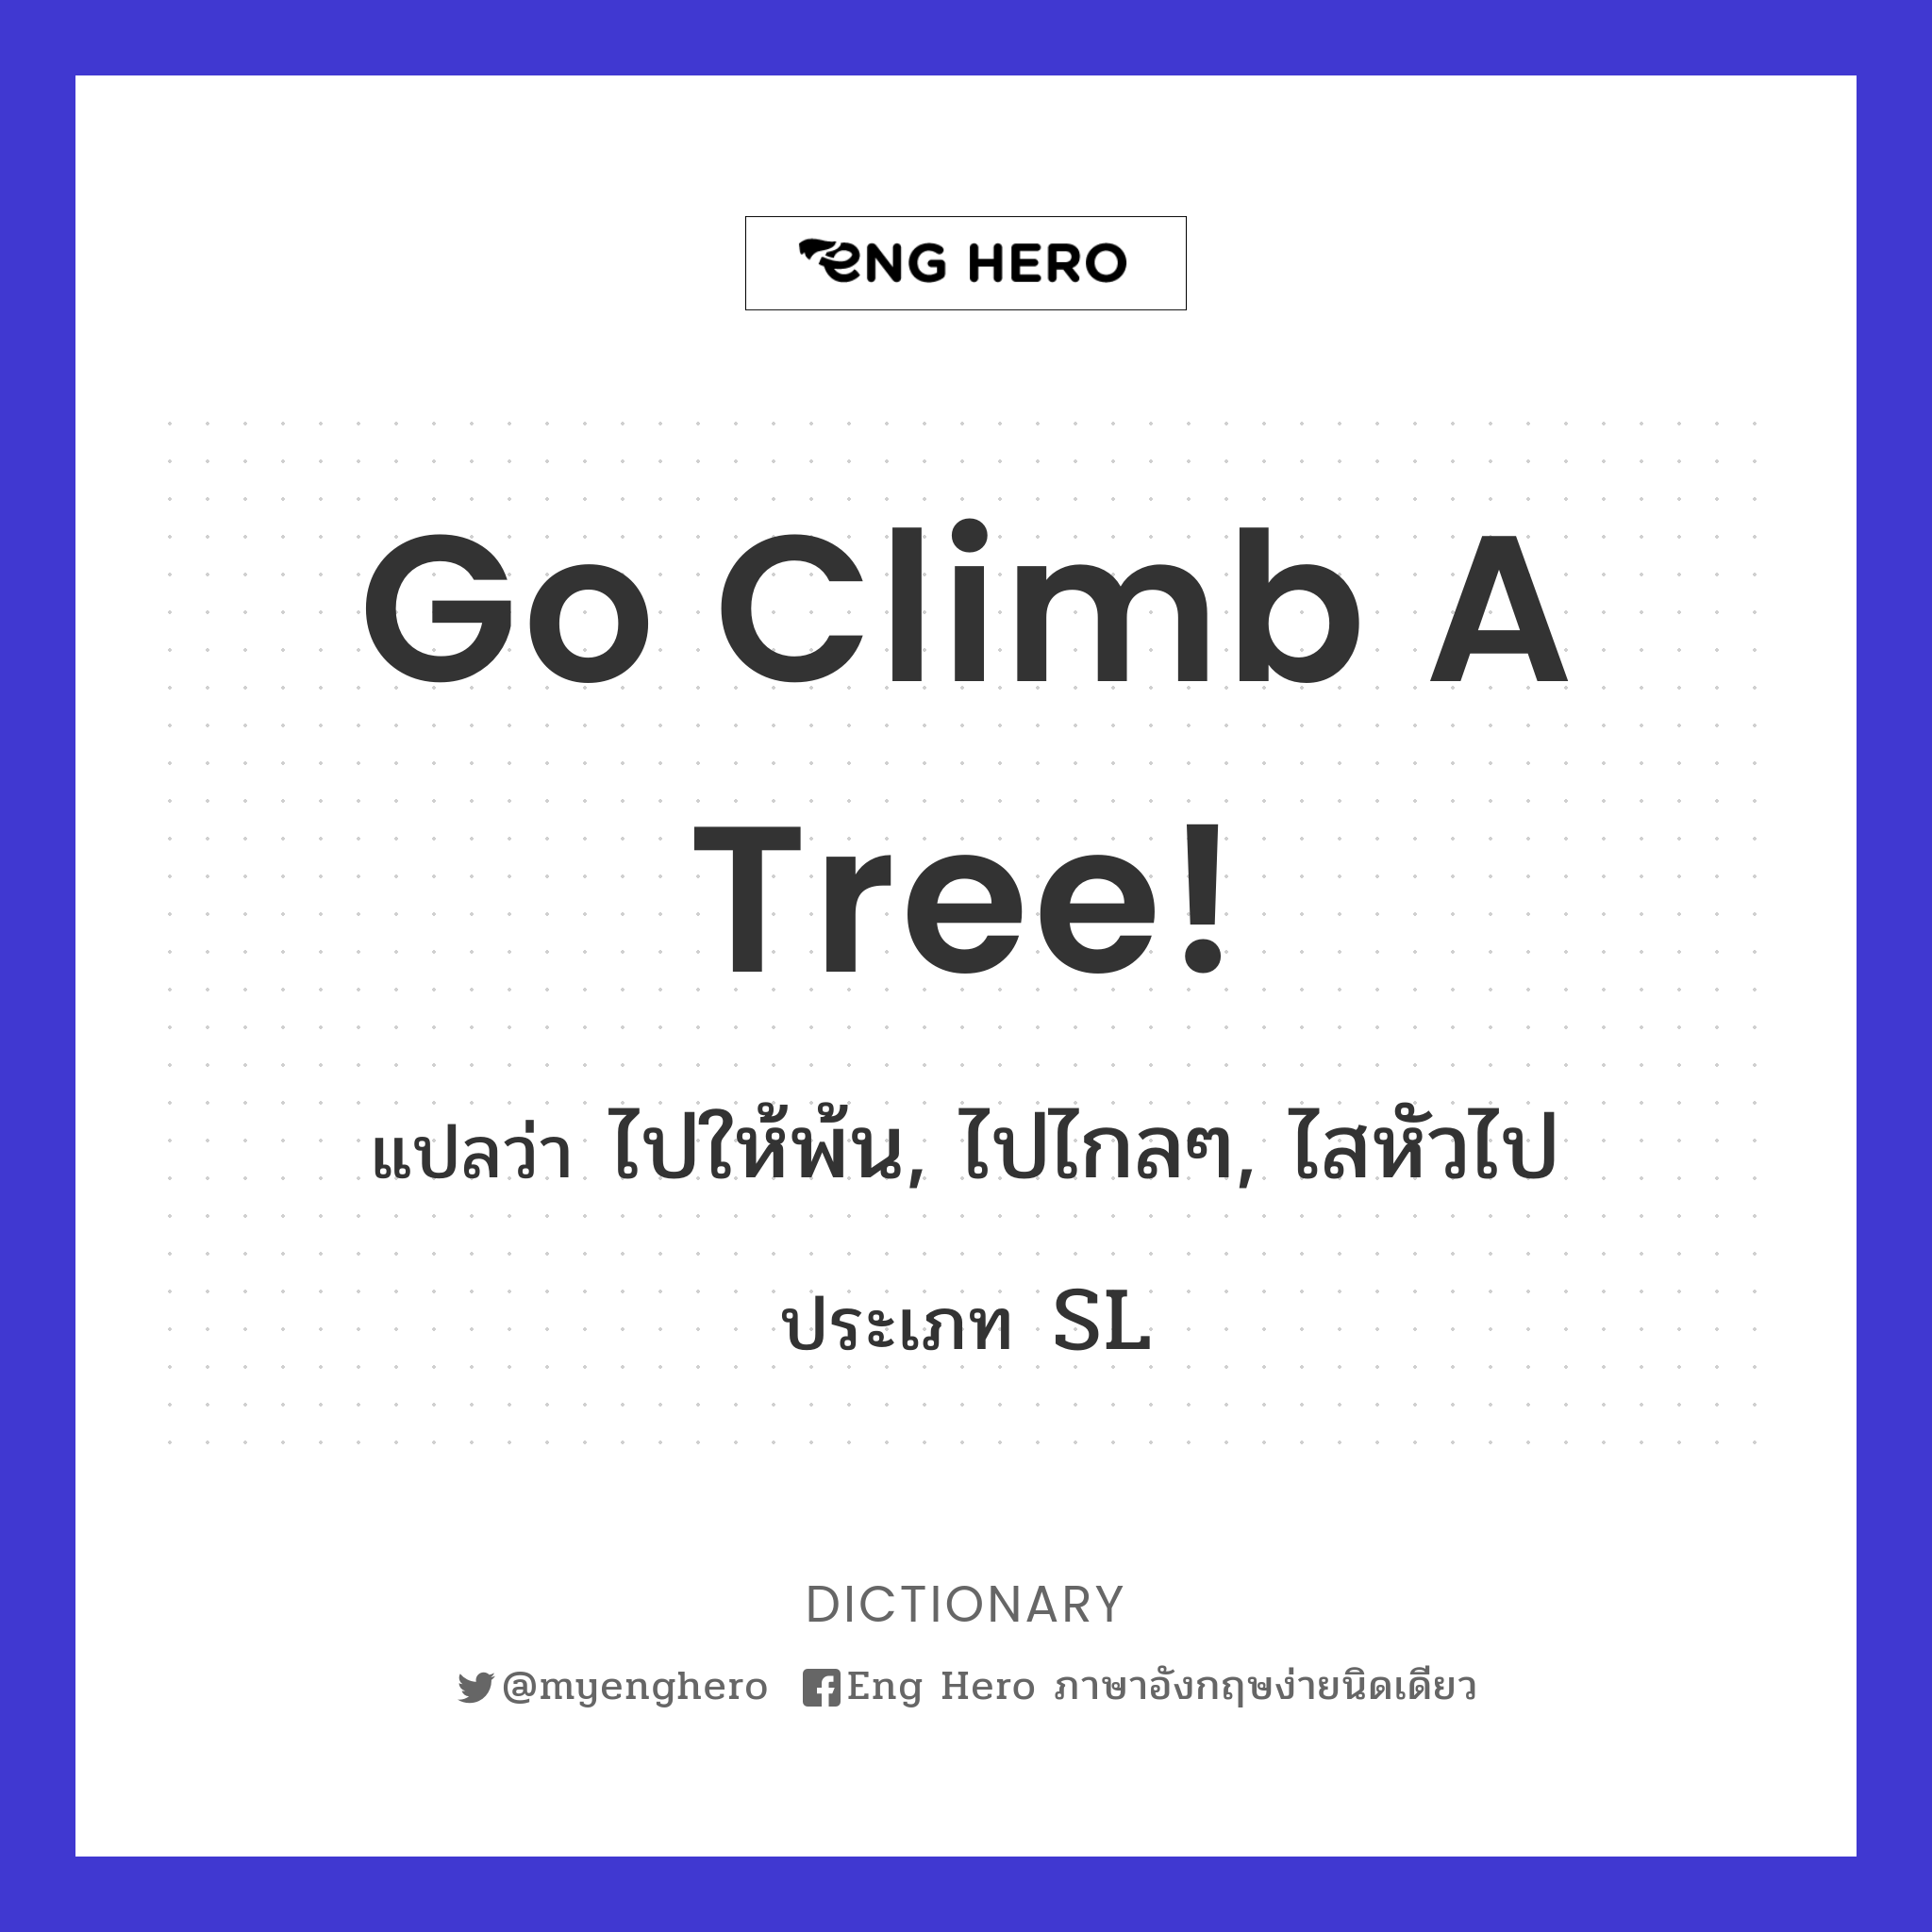 Go climb a tree!